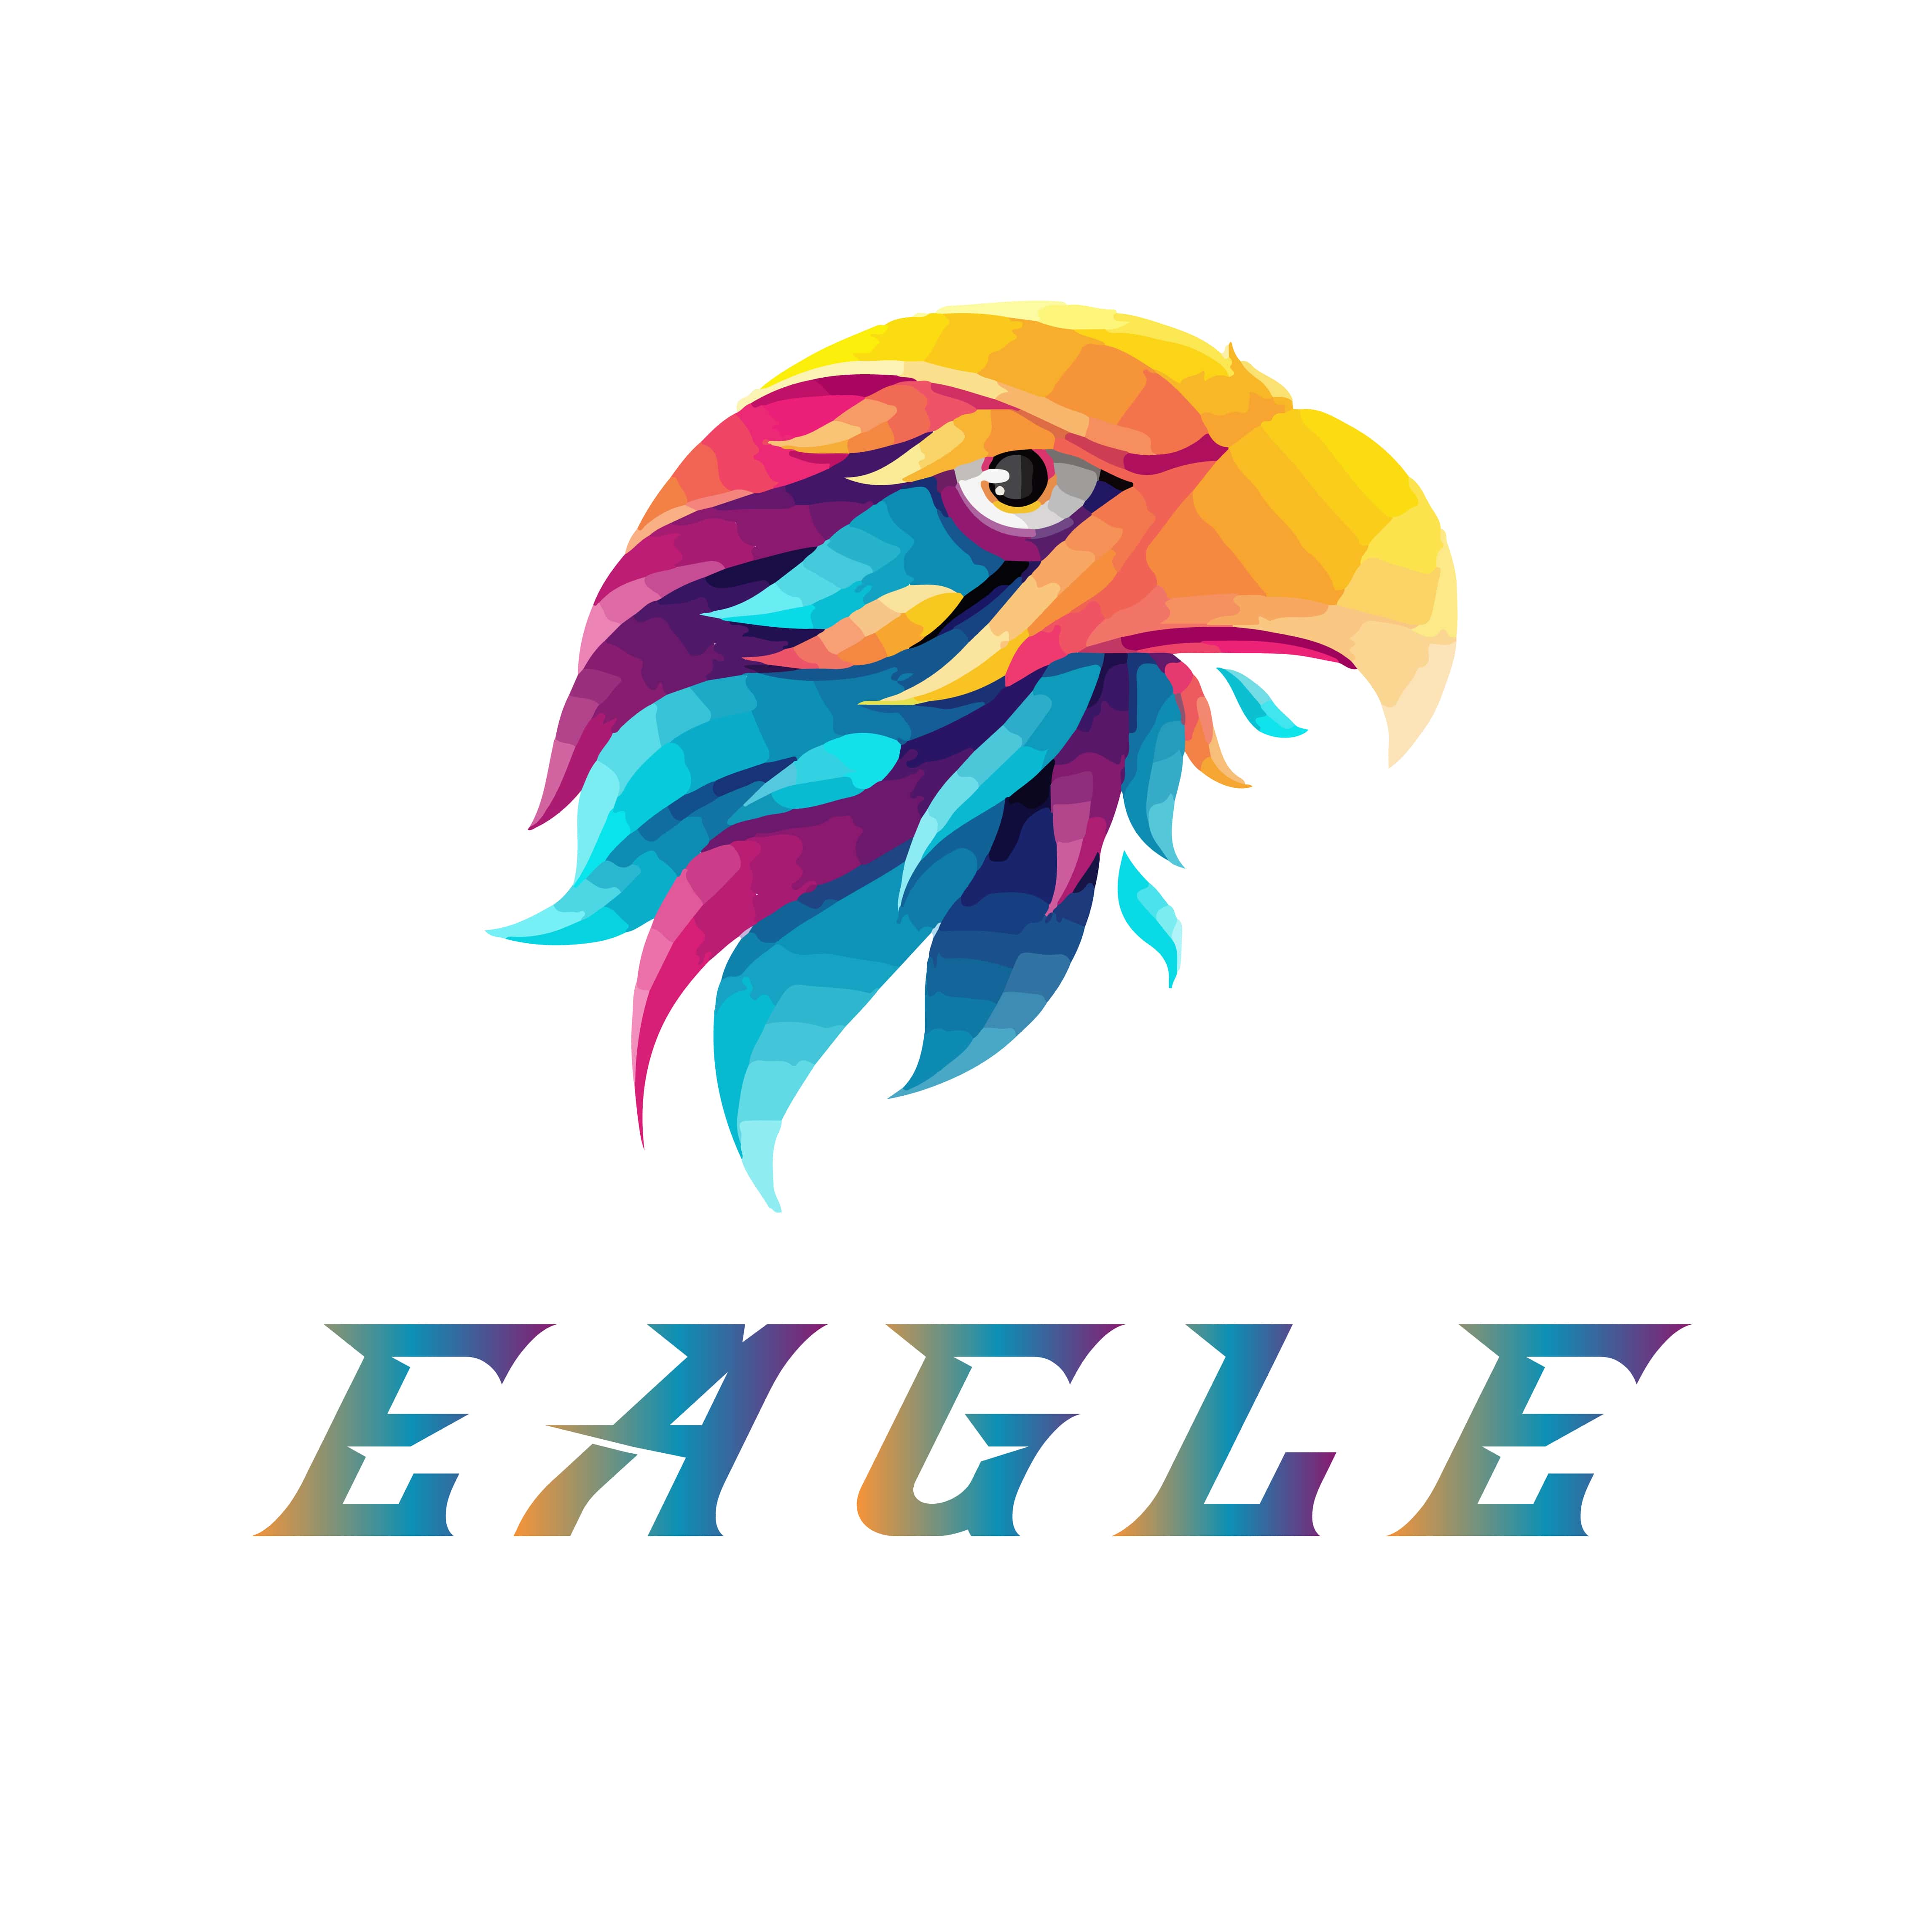 Modern EAGLE Logo Design cover image.